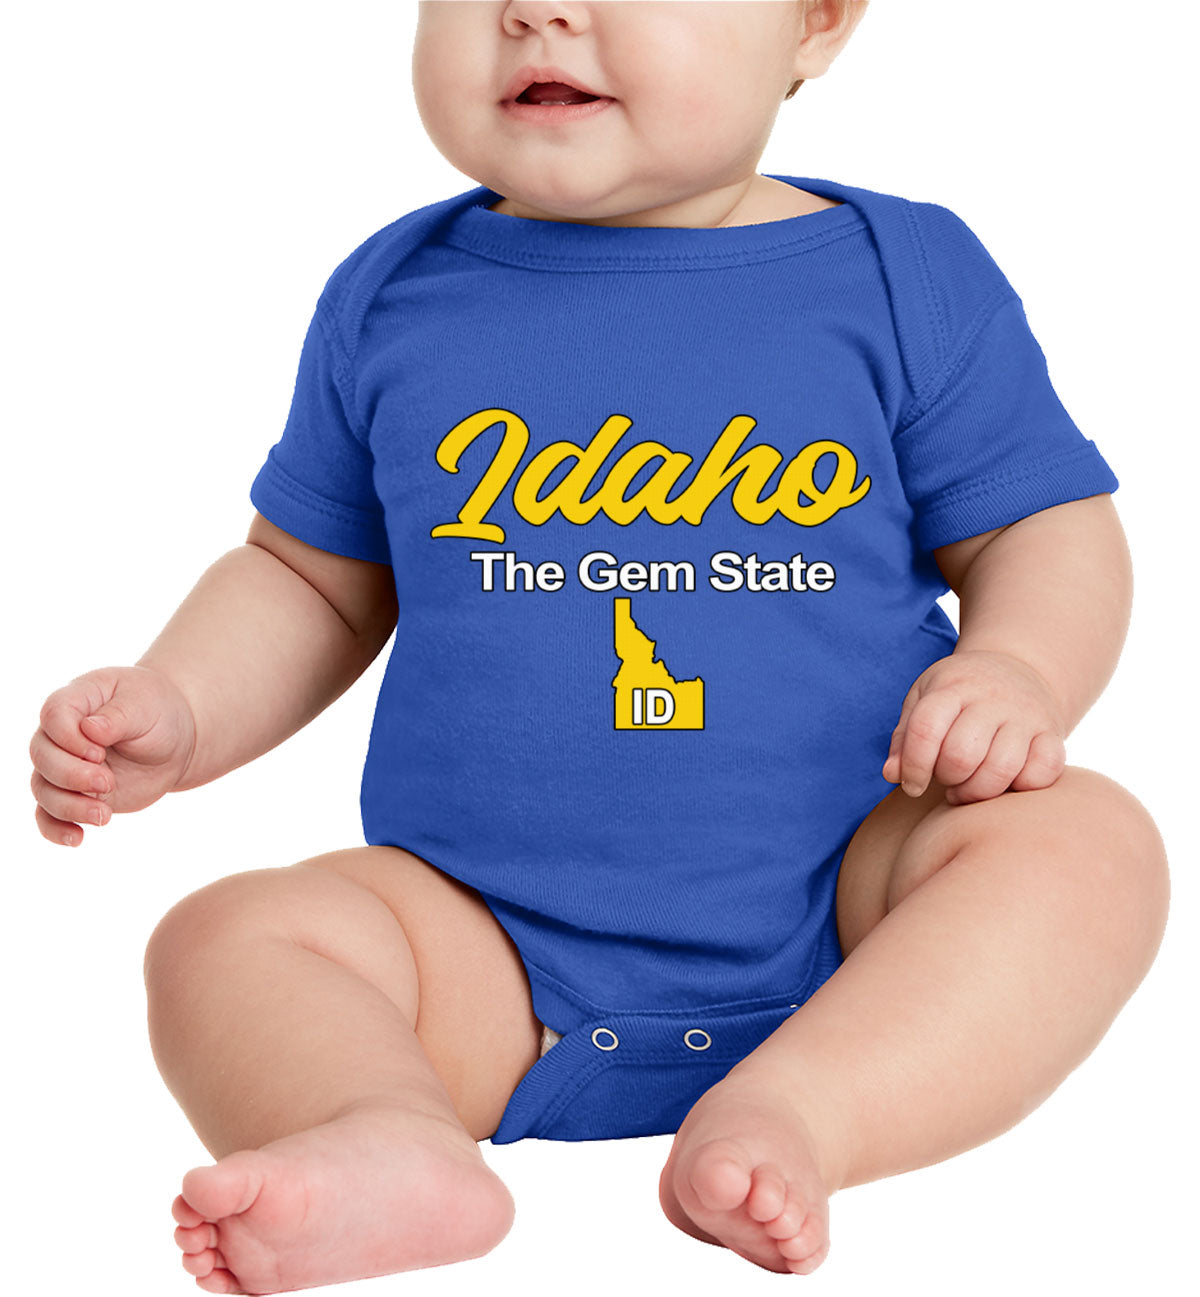 Idaho The Gem State Baby Onesie